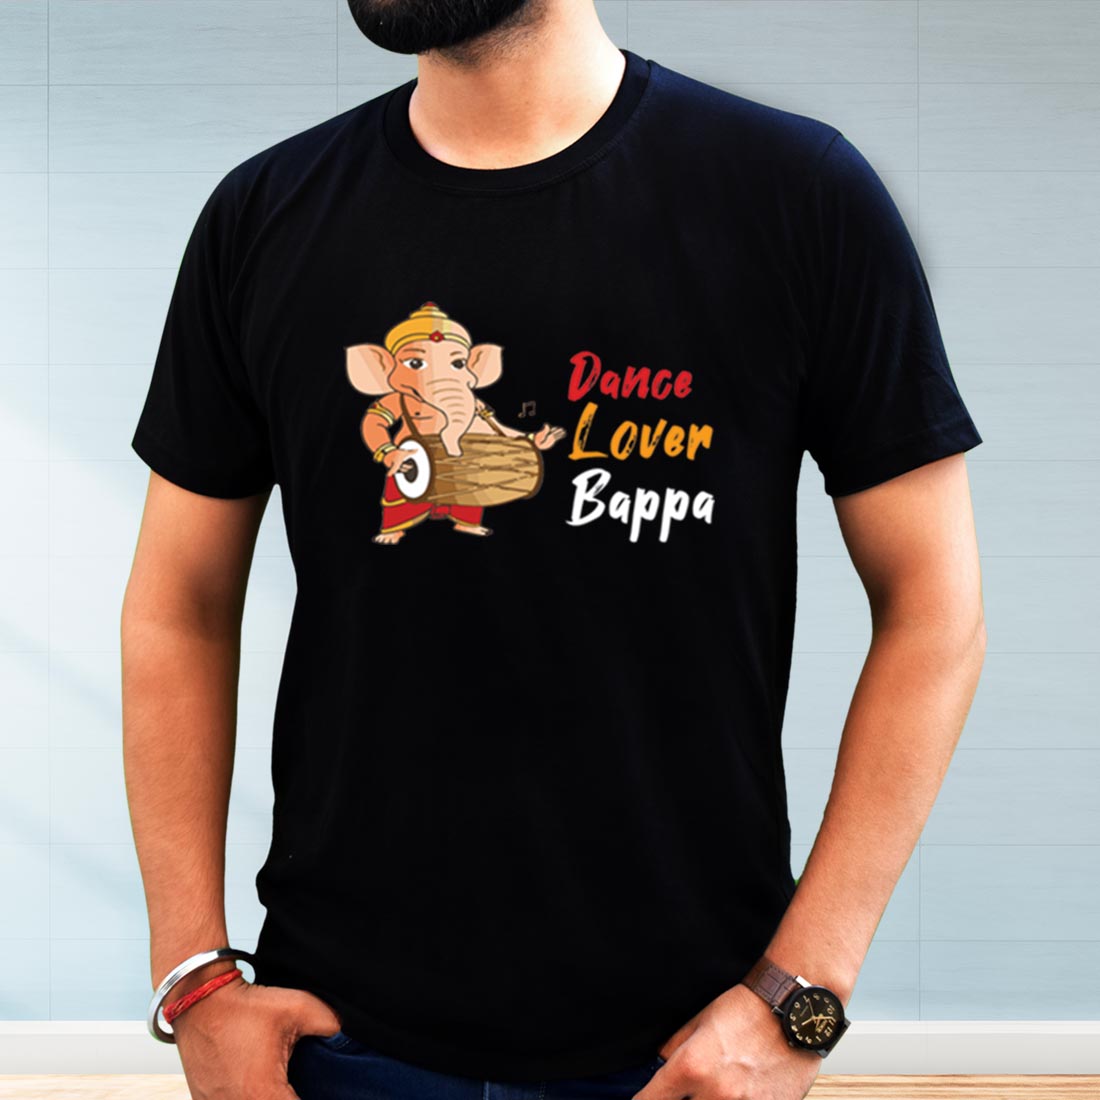 Dance Lover Bapa Printed Black T-Shirt for Men